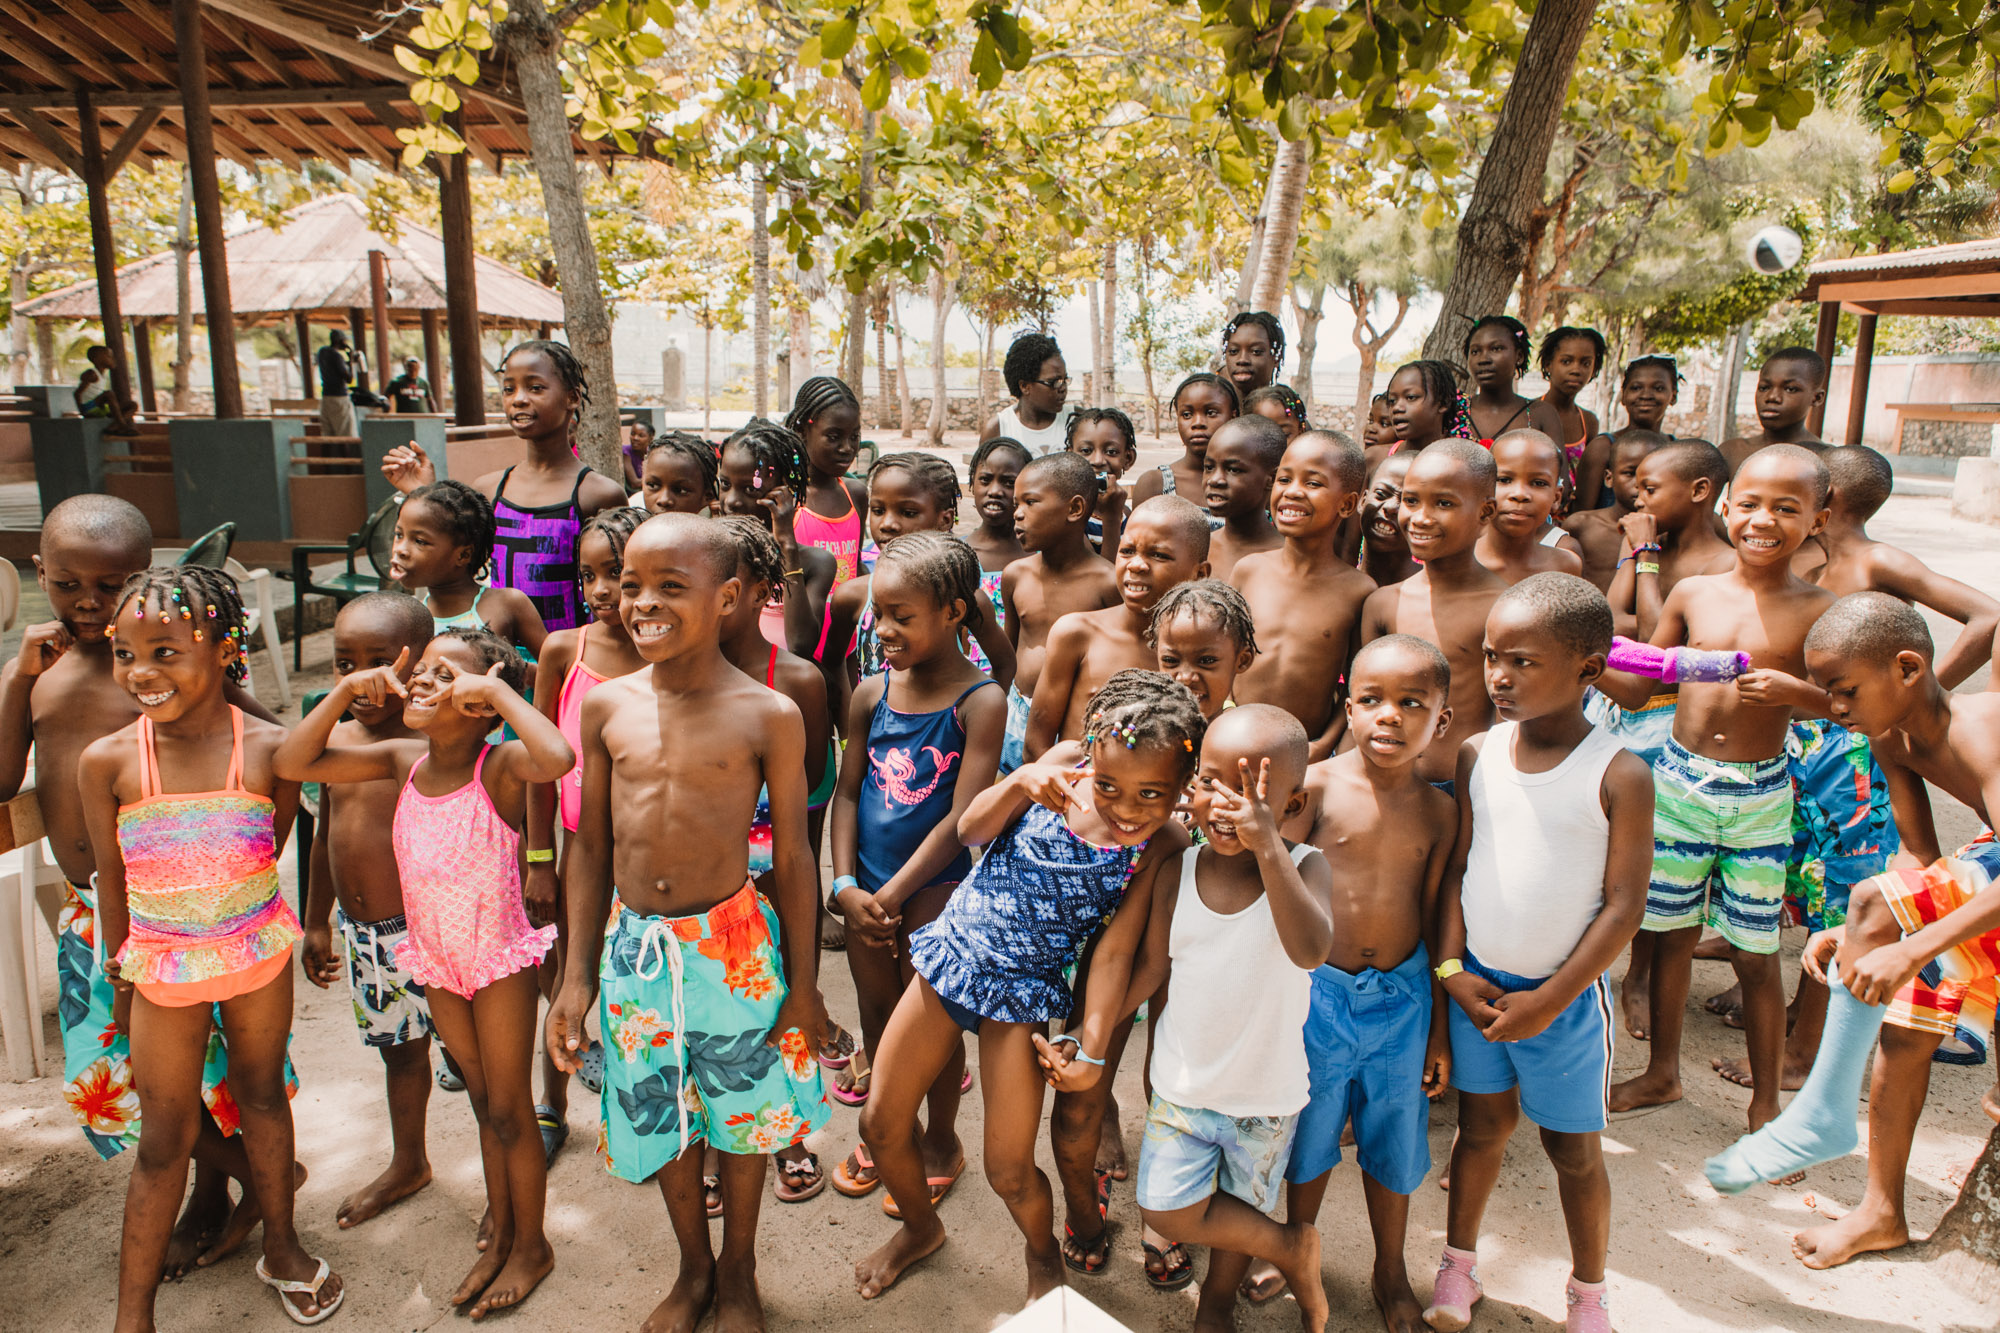 20190613_Surf City Haiti Blog_025_web.jpg